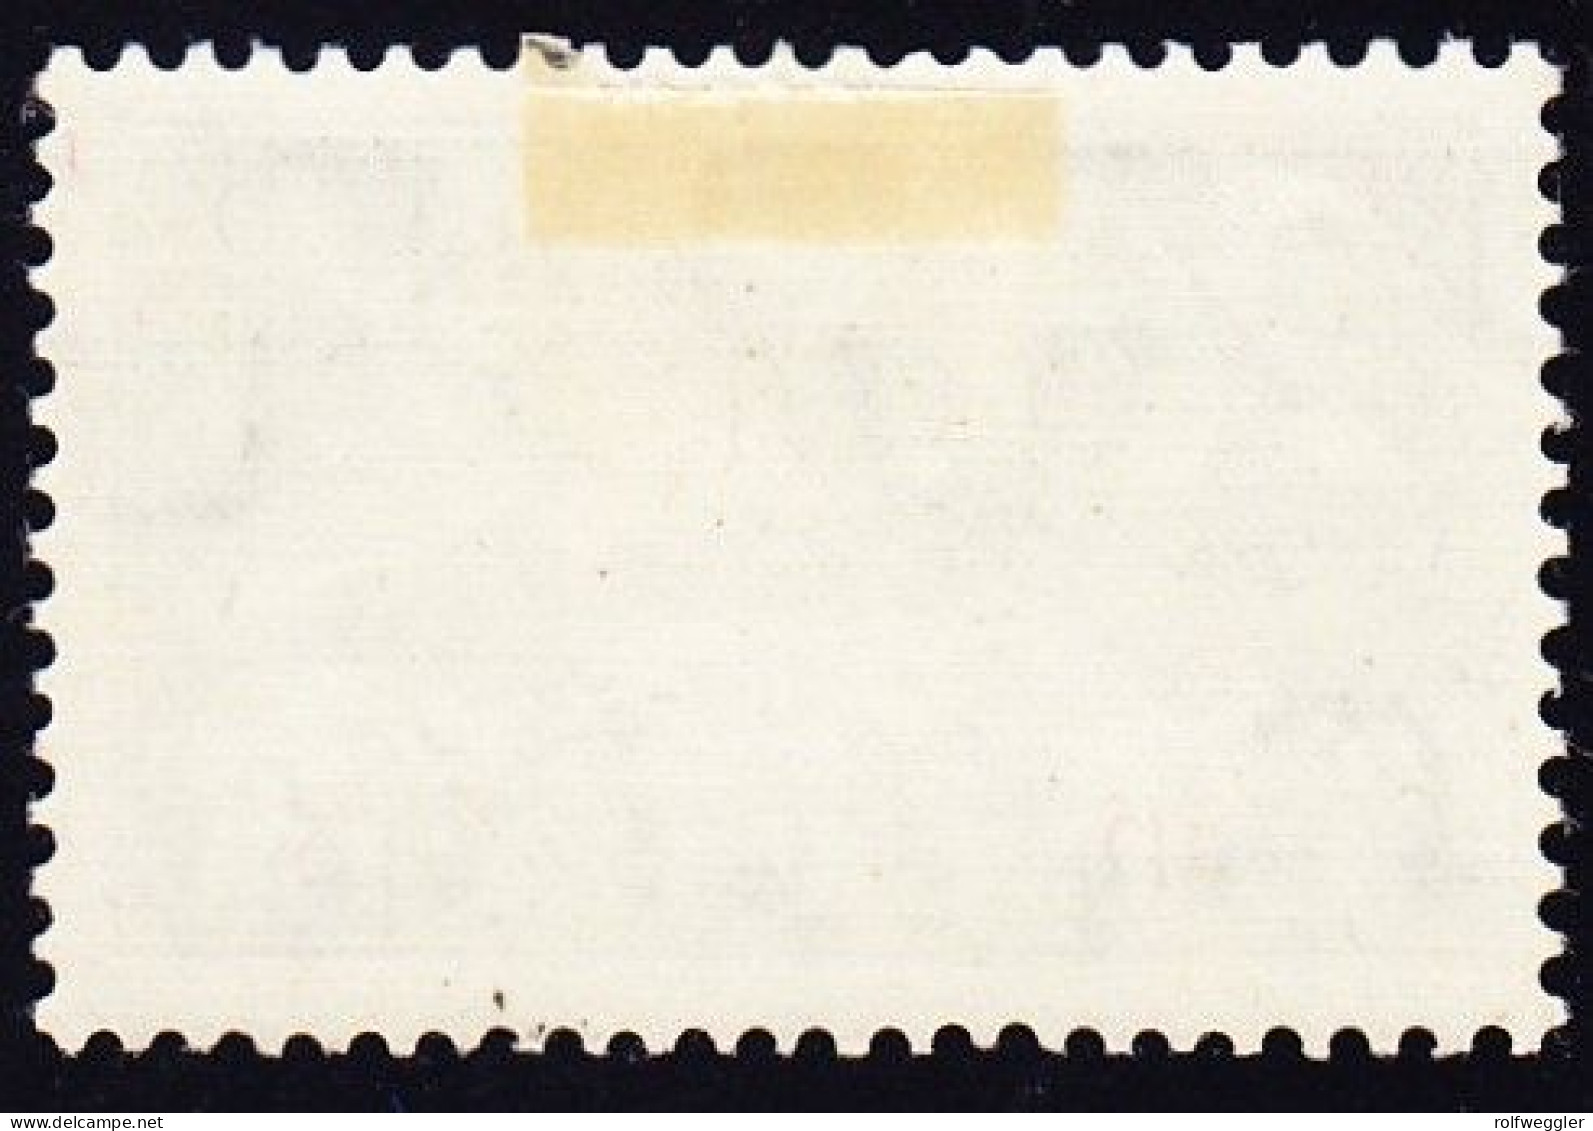 1937 20 Rp Grün, Geriffeltes Papier, Originalgummi Erstfalz (nach Links Stark Verschobener Unterdruck) - Ungebraucht